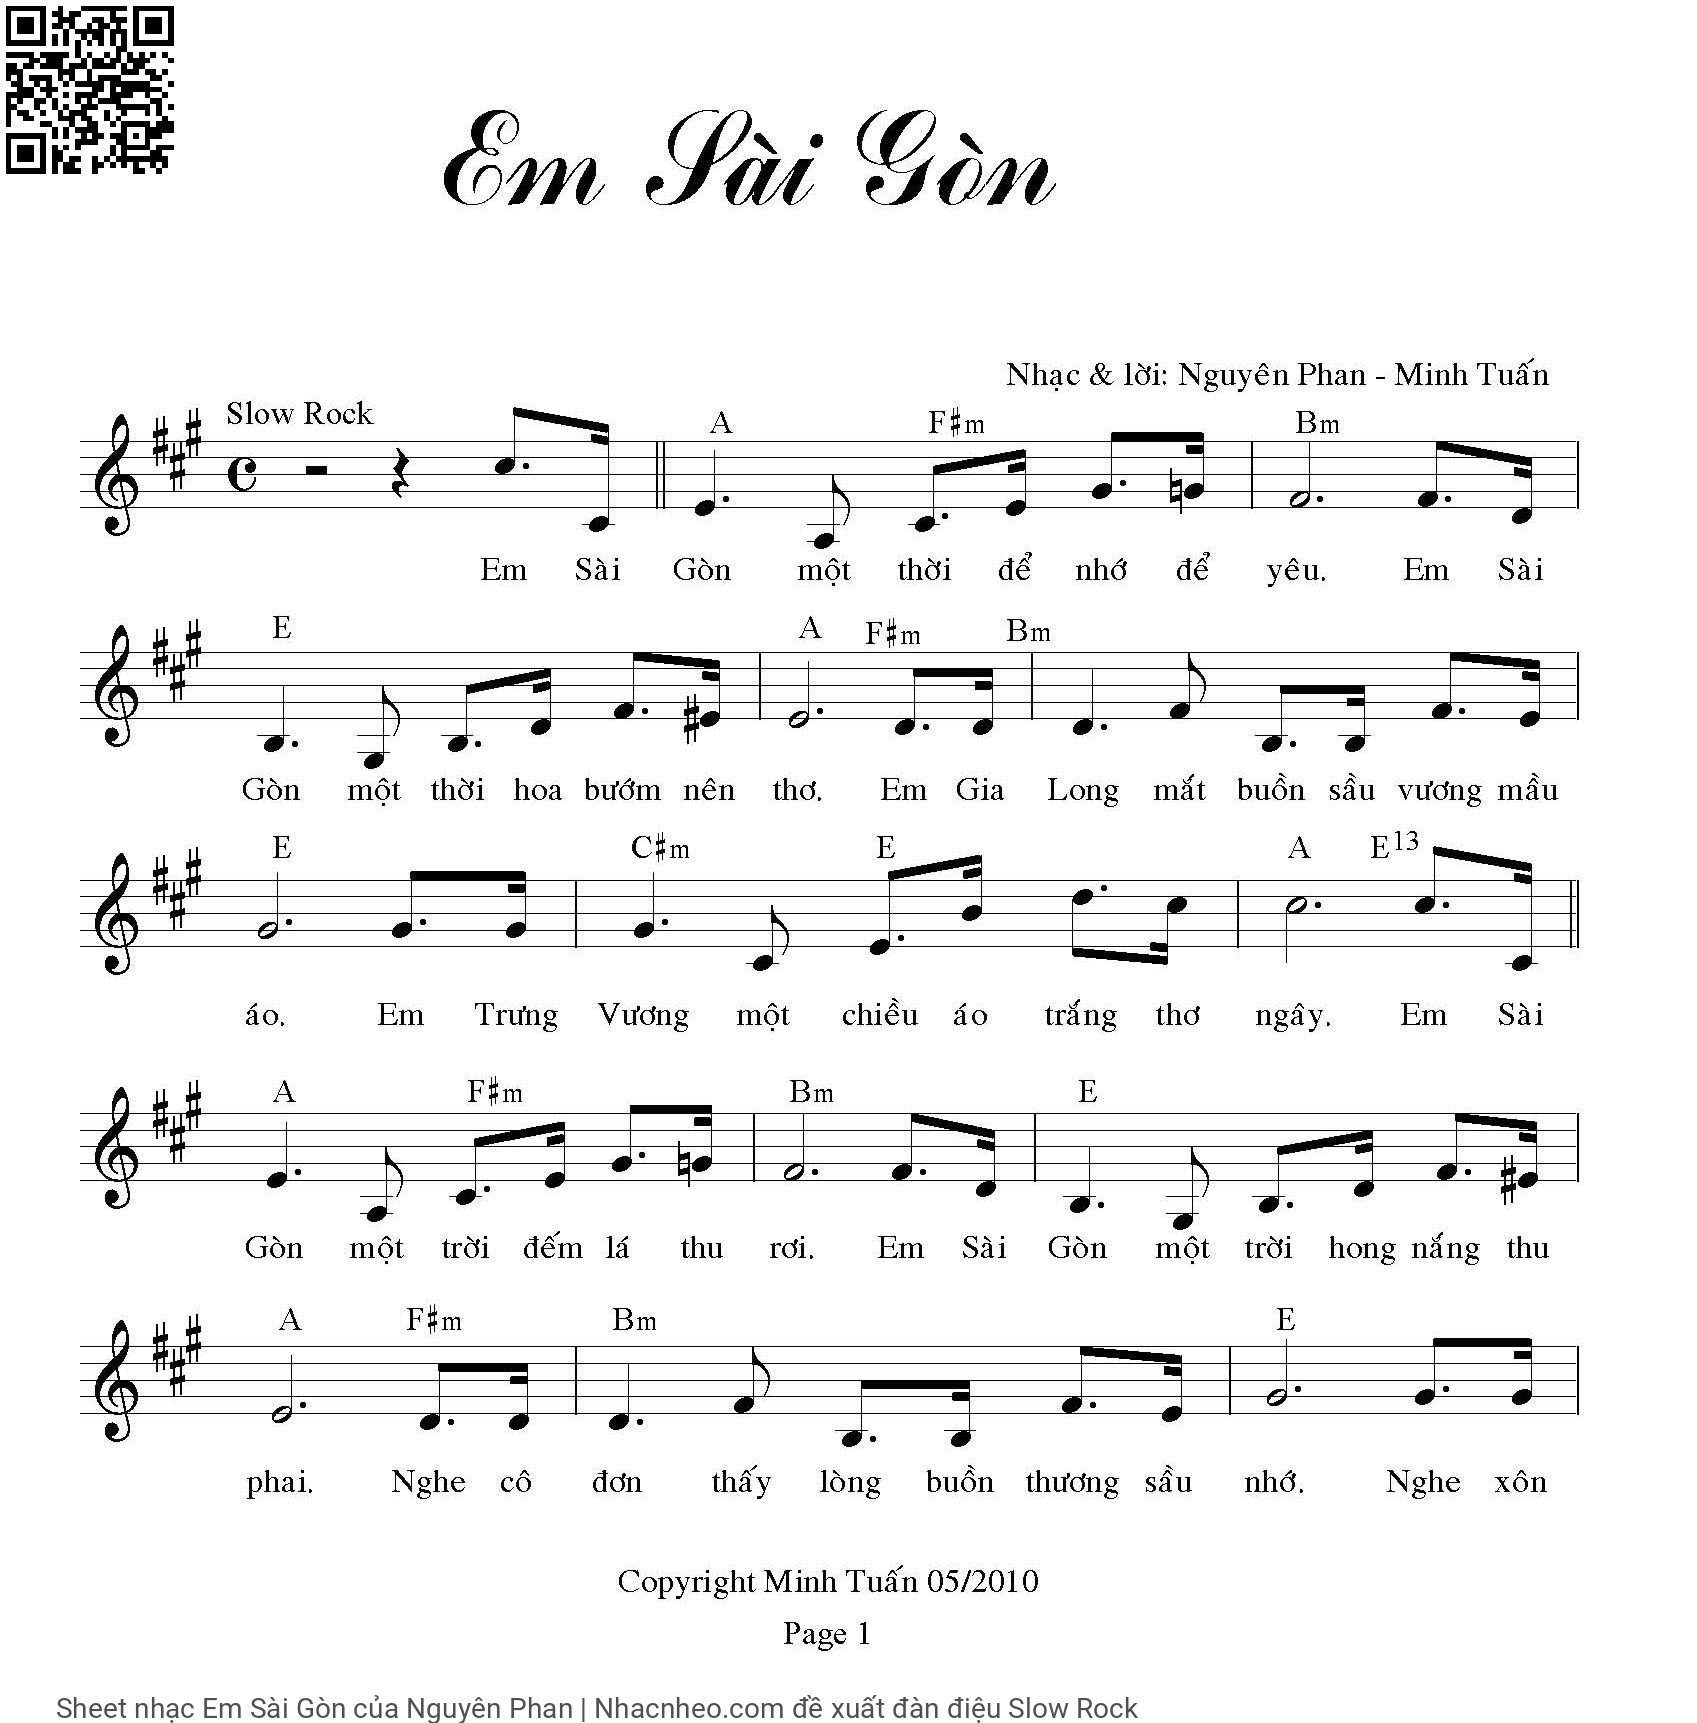 Sheet nhạc Em Sài Gòn - Nguyên Phan